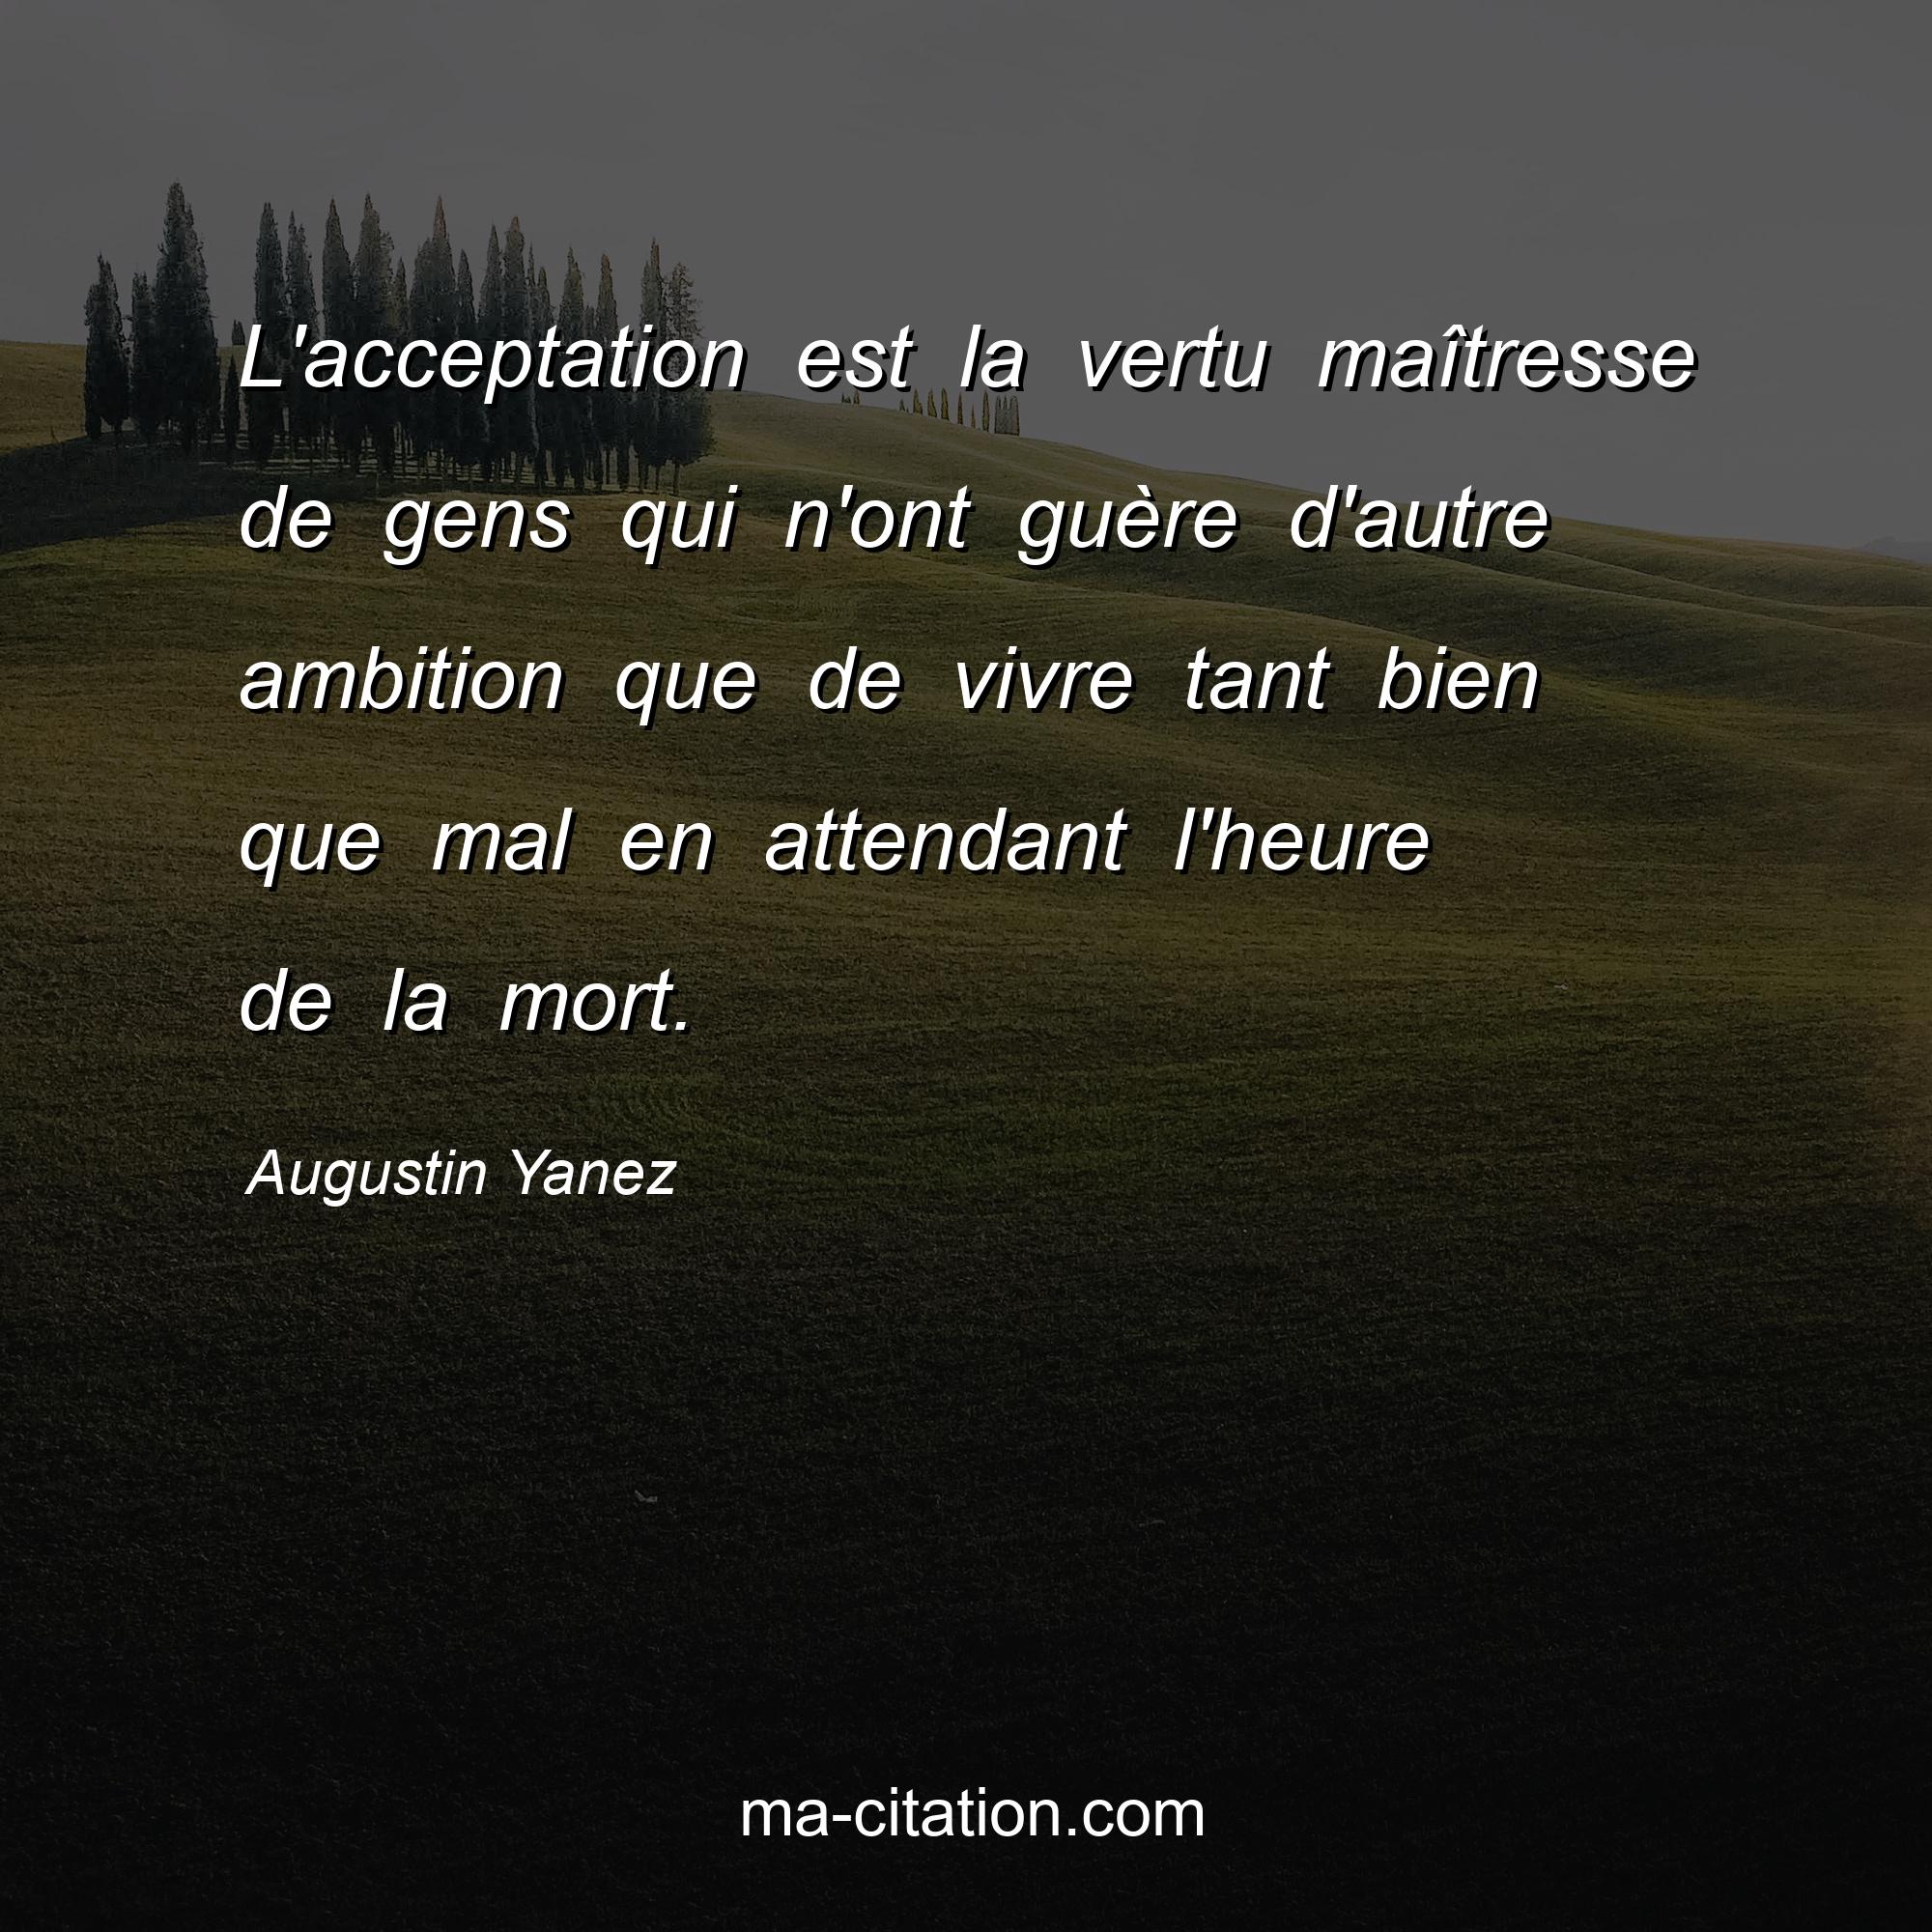 Augustin Yanez : L'acceptation est la vertu maîtresse de gens qui n'ont guère d'autre ambition que de vivre tant bien que mal en attendant l'heure de la mort.